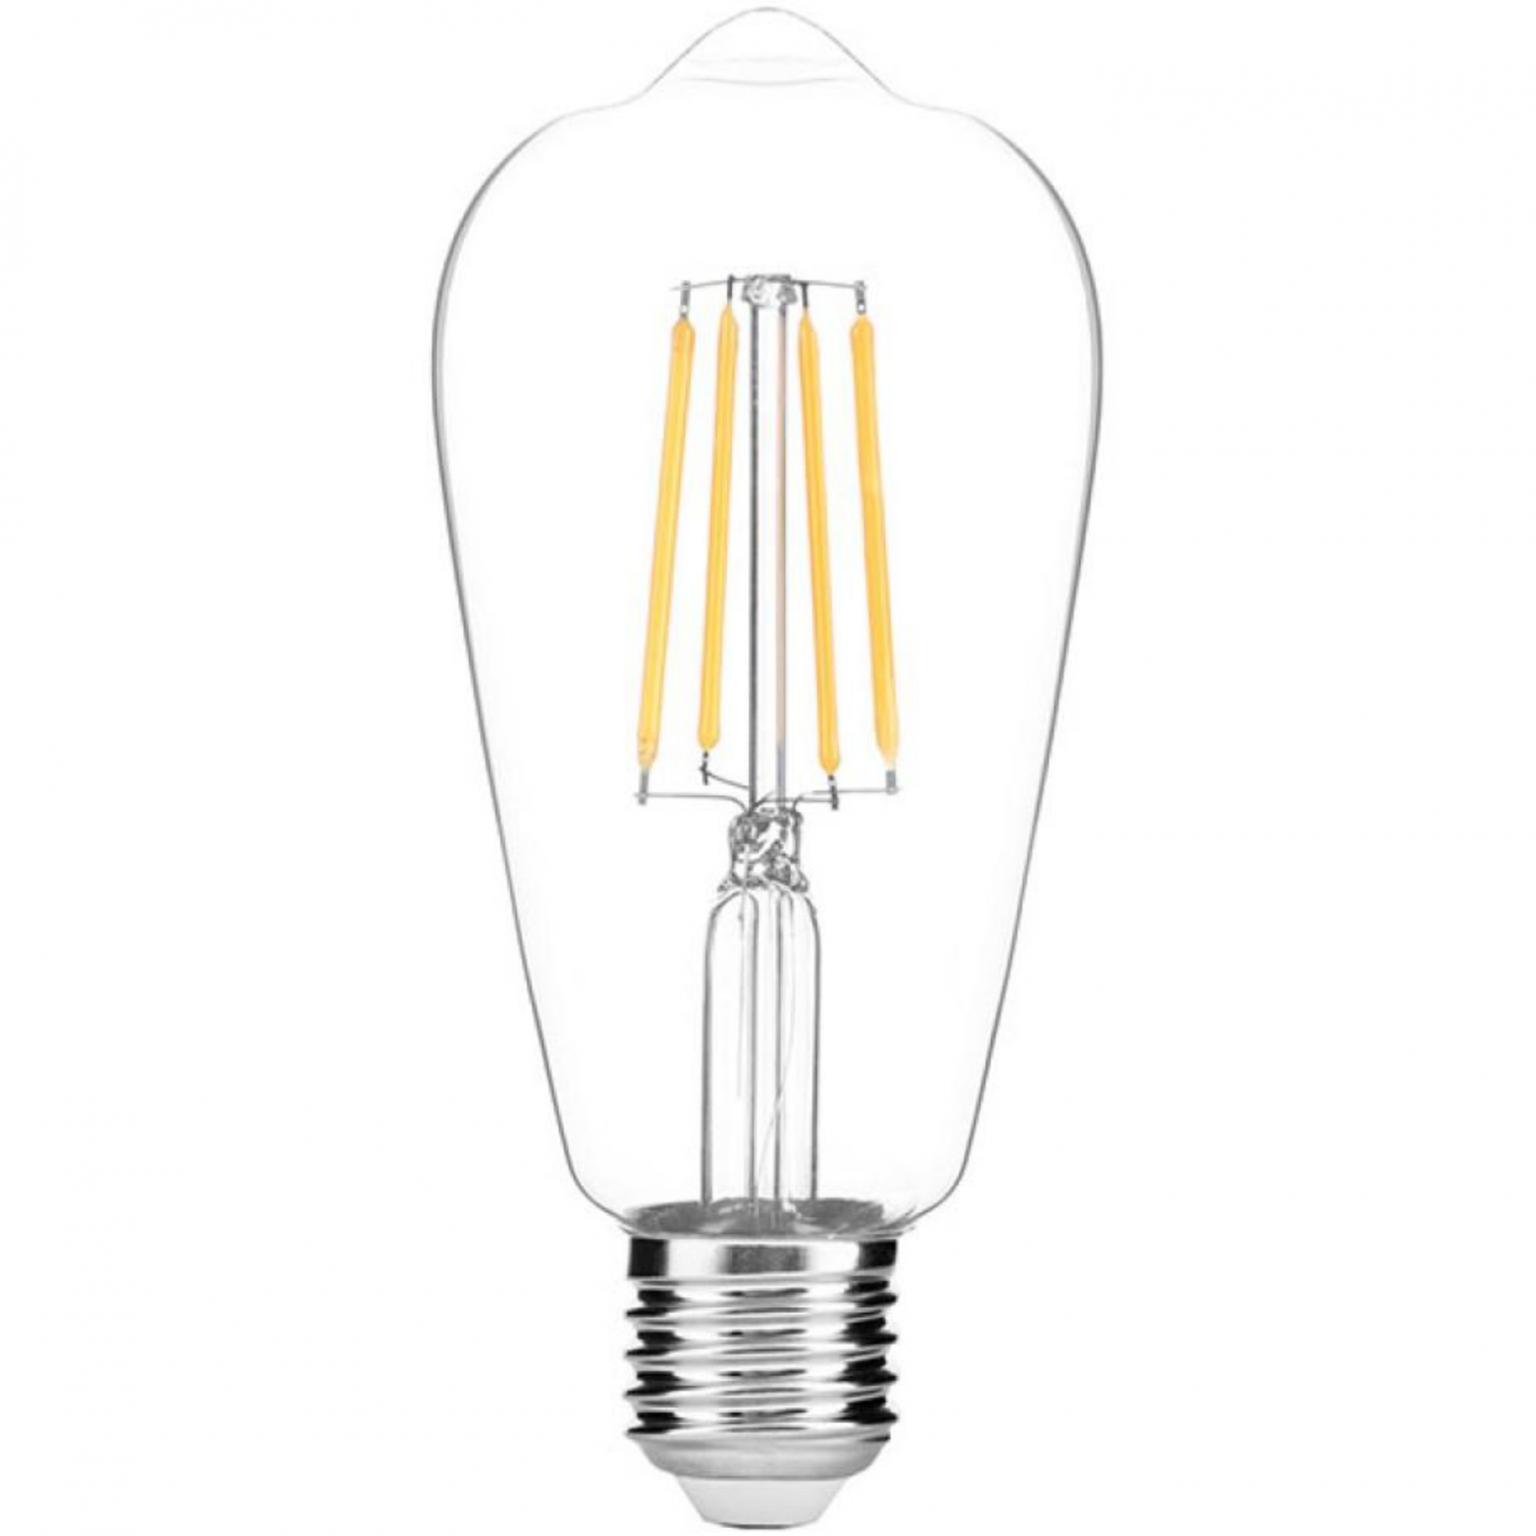 Filament lamp - 810 lumen - Avide